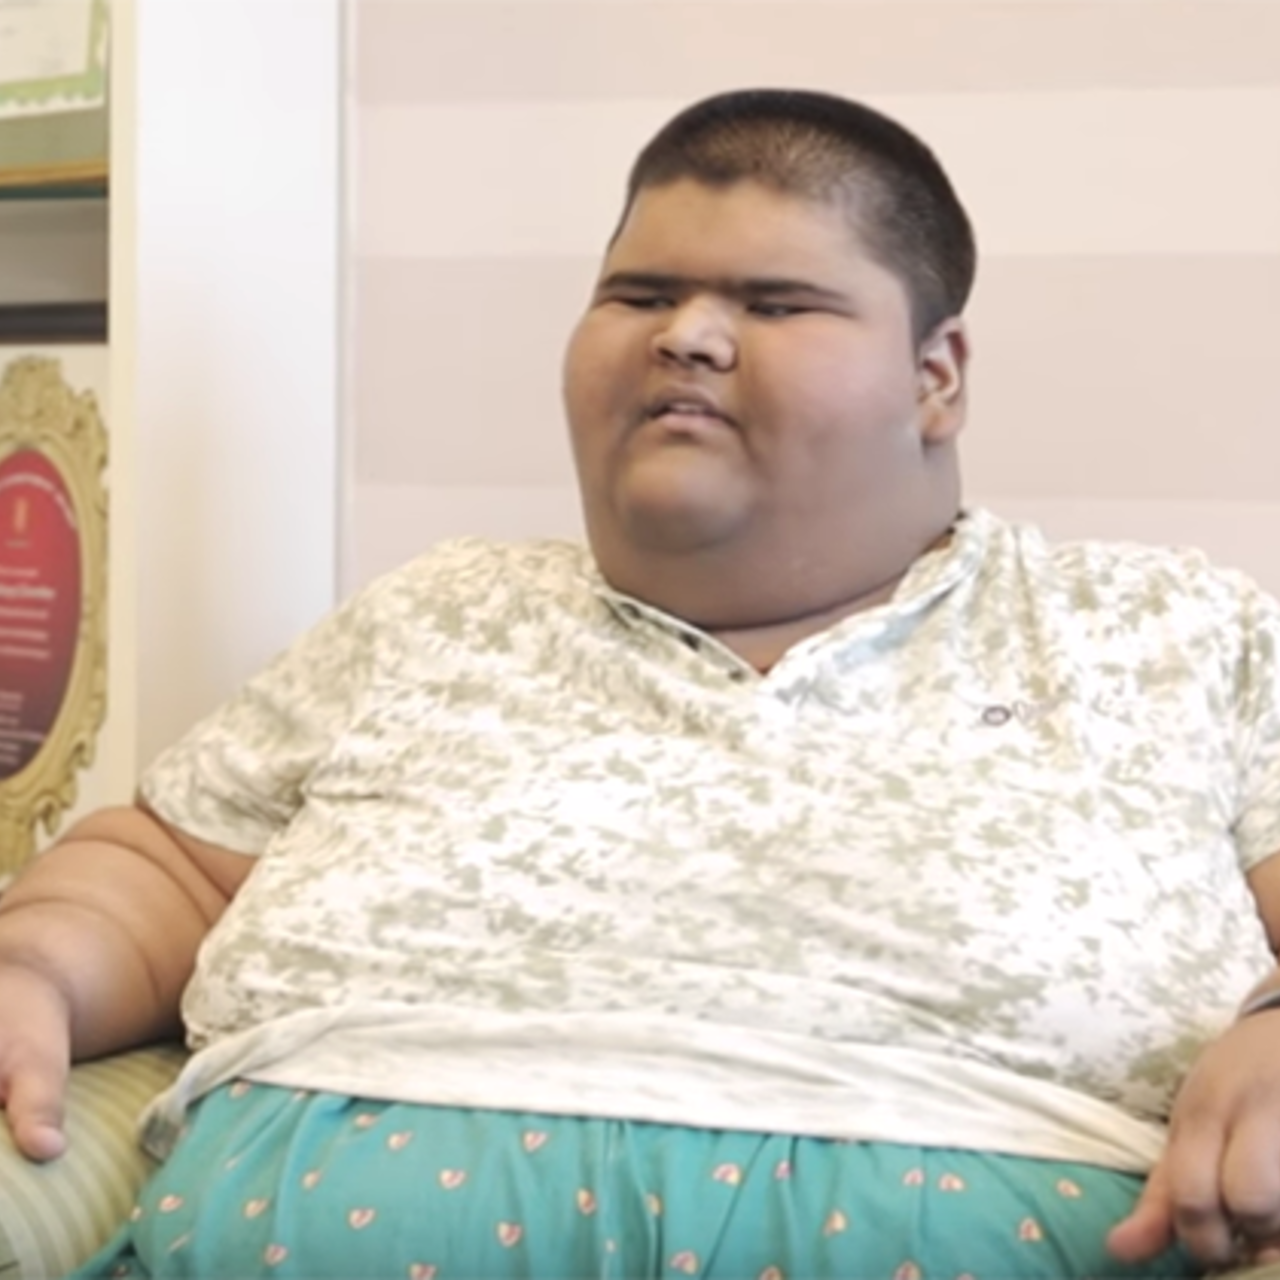 Лицо толстого мальчика. Михир Джаин. Самый толстый мальчик в мире самый толстый мальчик в мире.